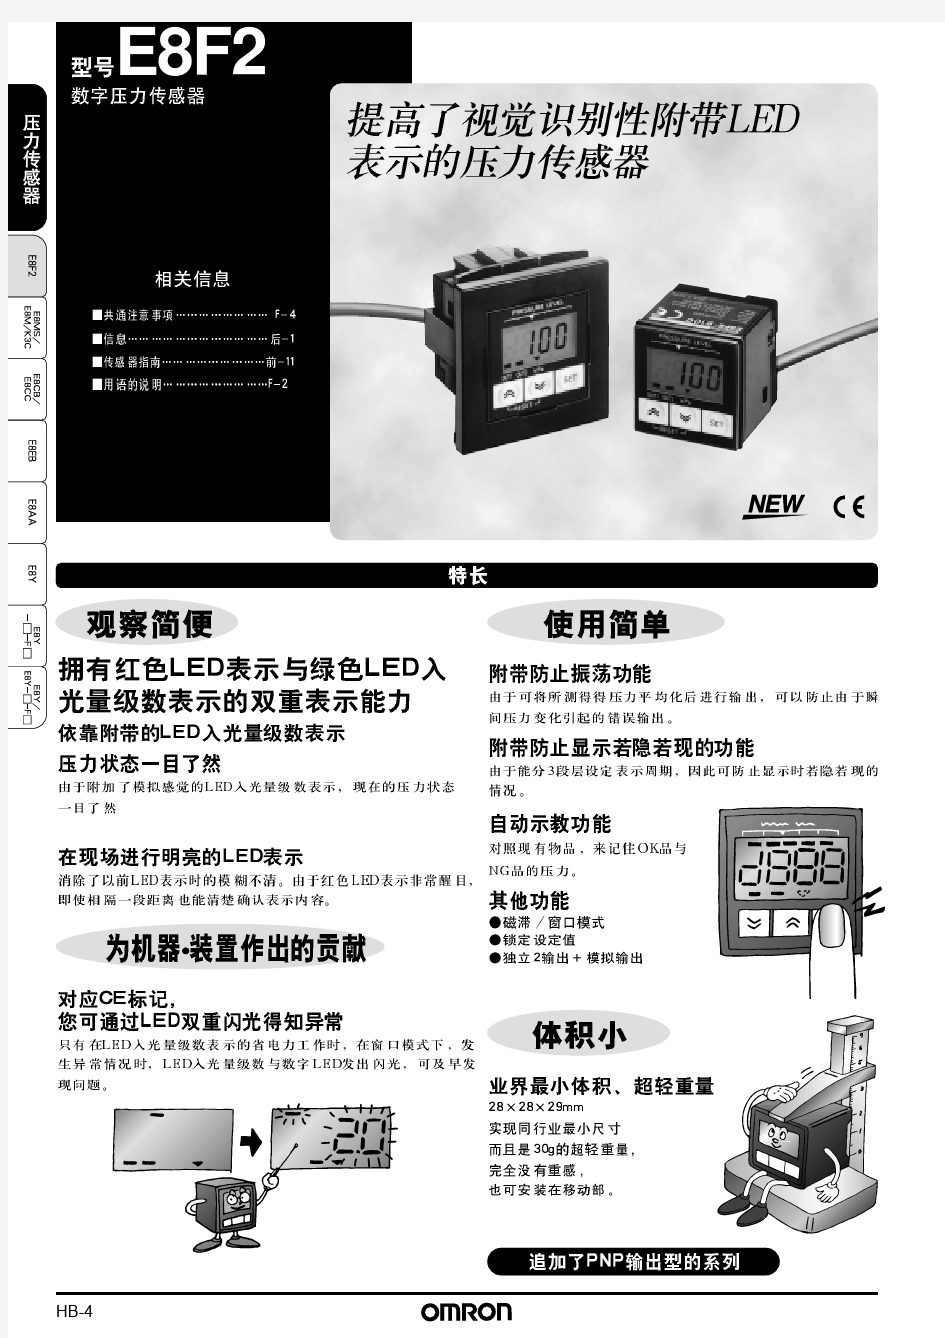 欧姆龙E2F2数字压力传感器——使用手册